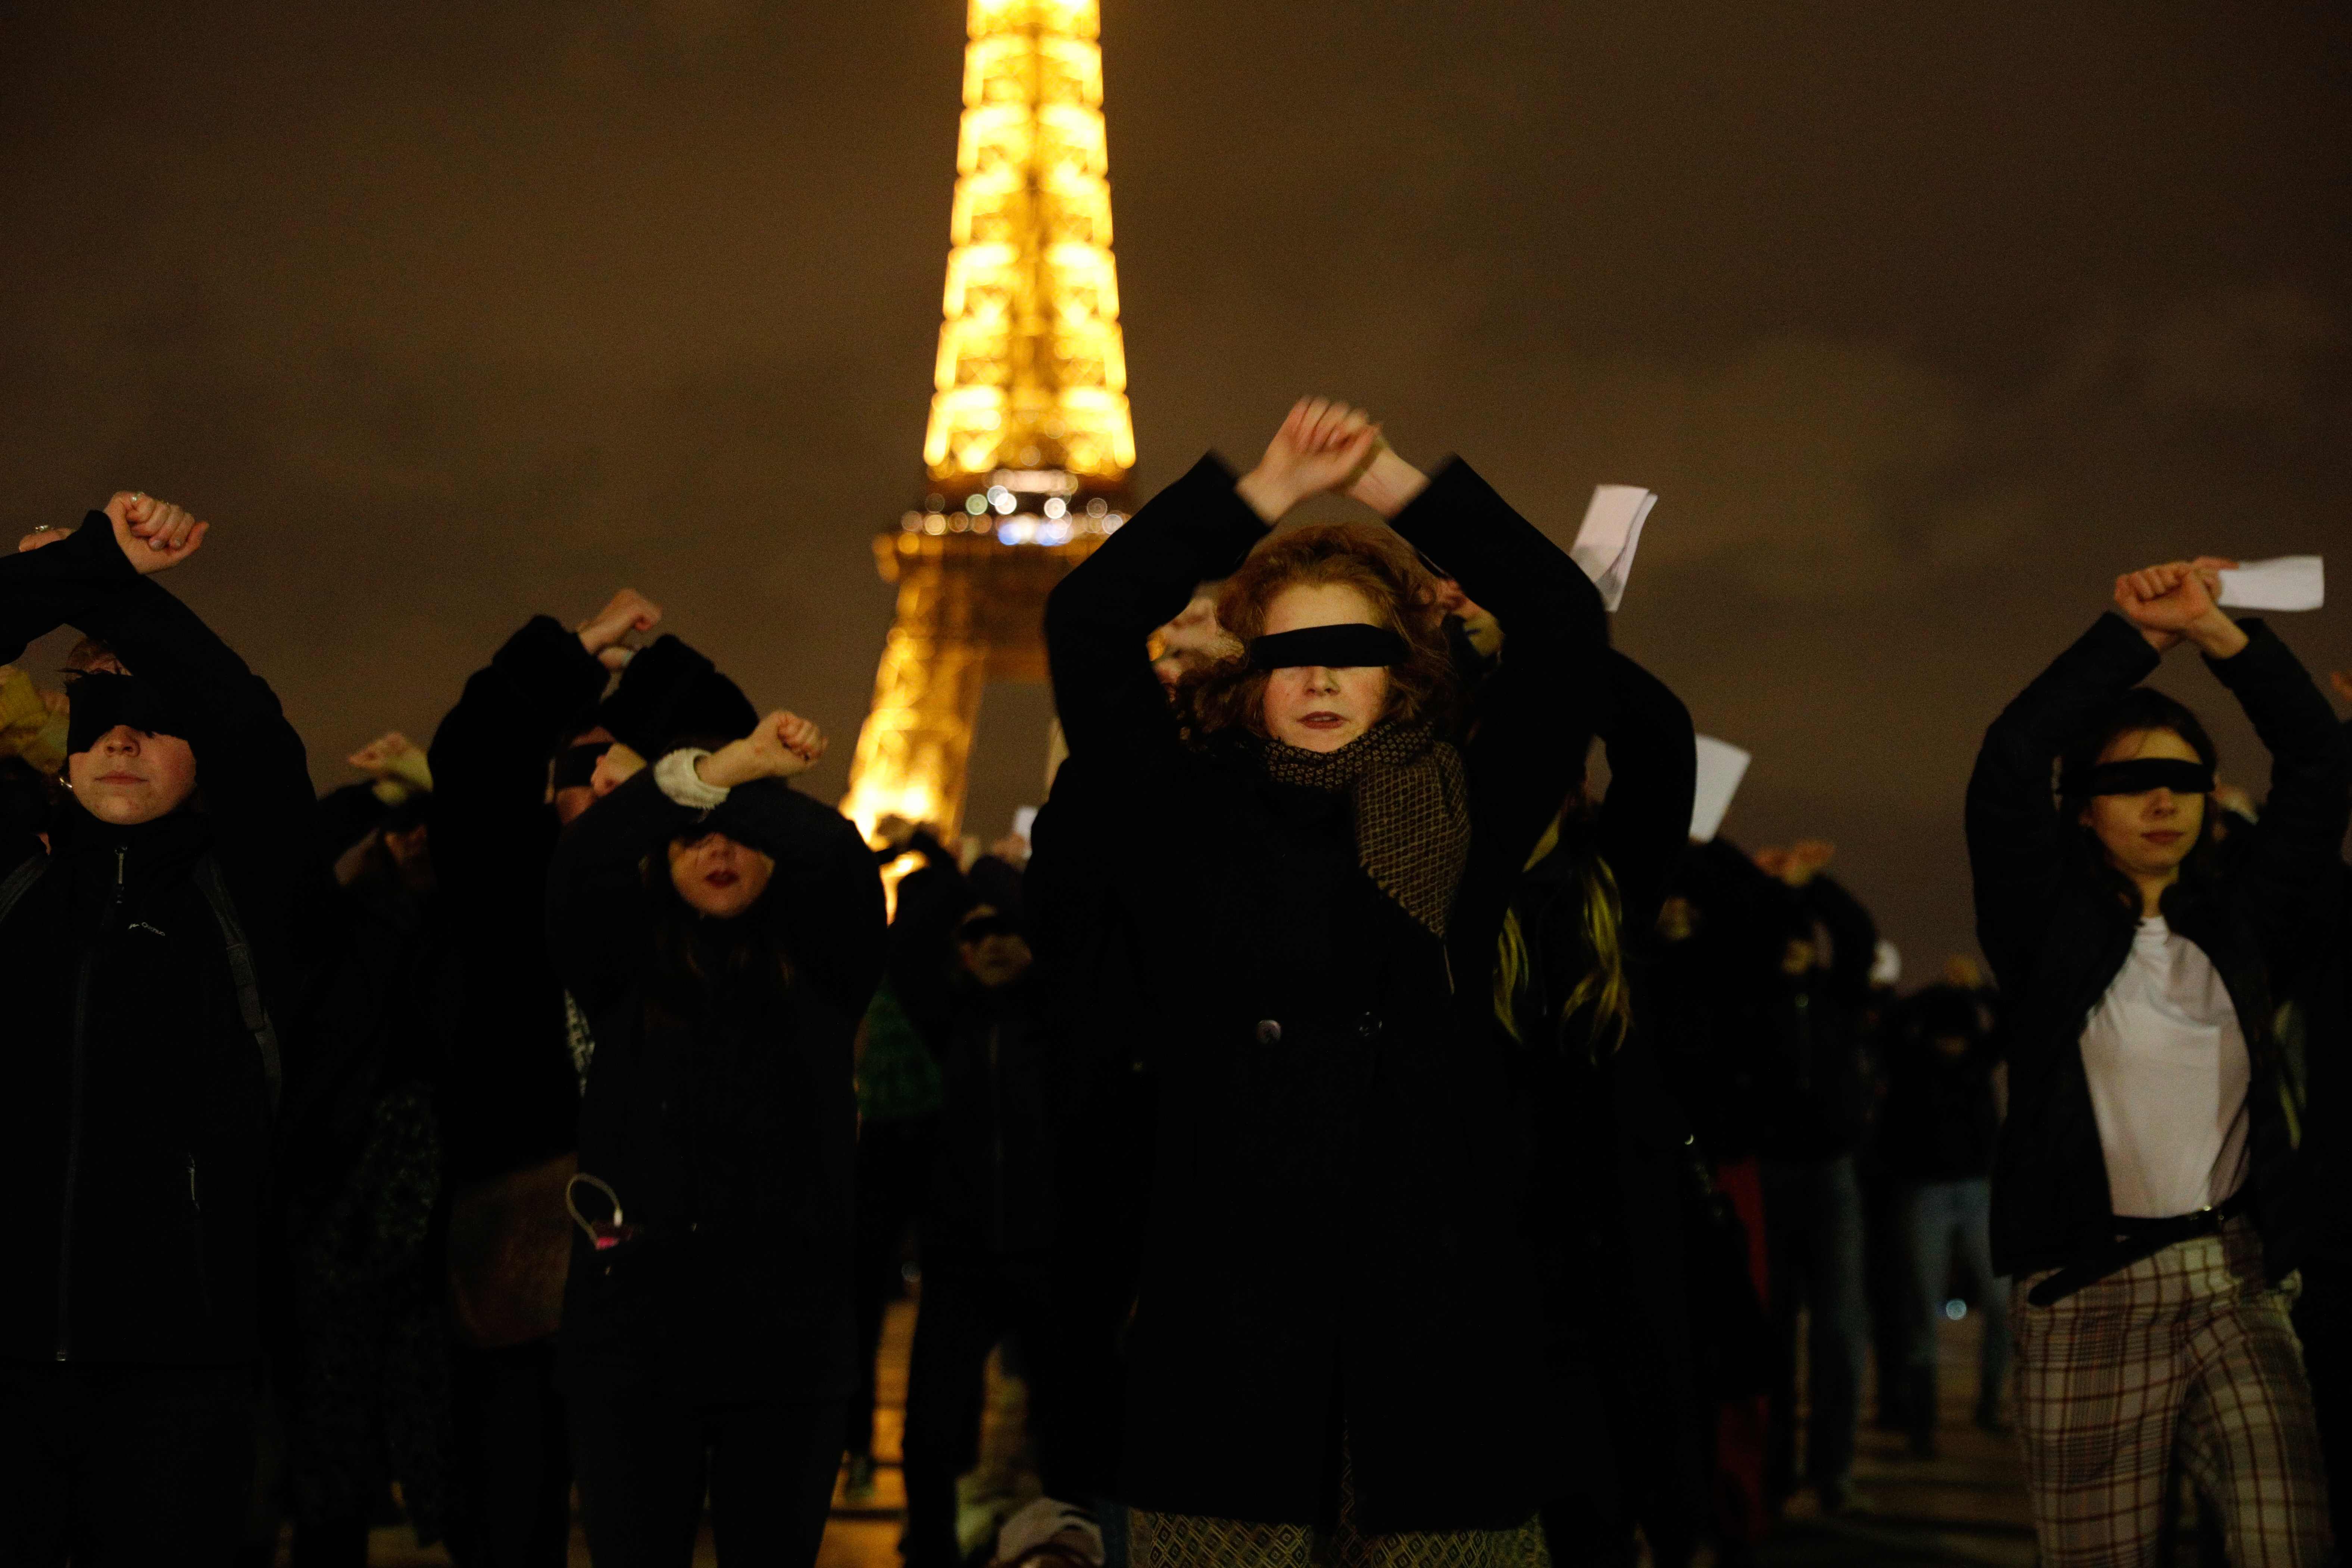 Con los ojos vendados, mujeres participan en un flash mob para protestar contra el feminicidio y la violencia sexual, organizado por el colectivo feminista #NousToutes e inspirado por el grupo feminista chileno Las Tesis, en la explanada de Trocadero en París. (Foto Prensa Libre: AFP)